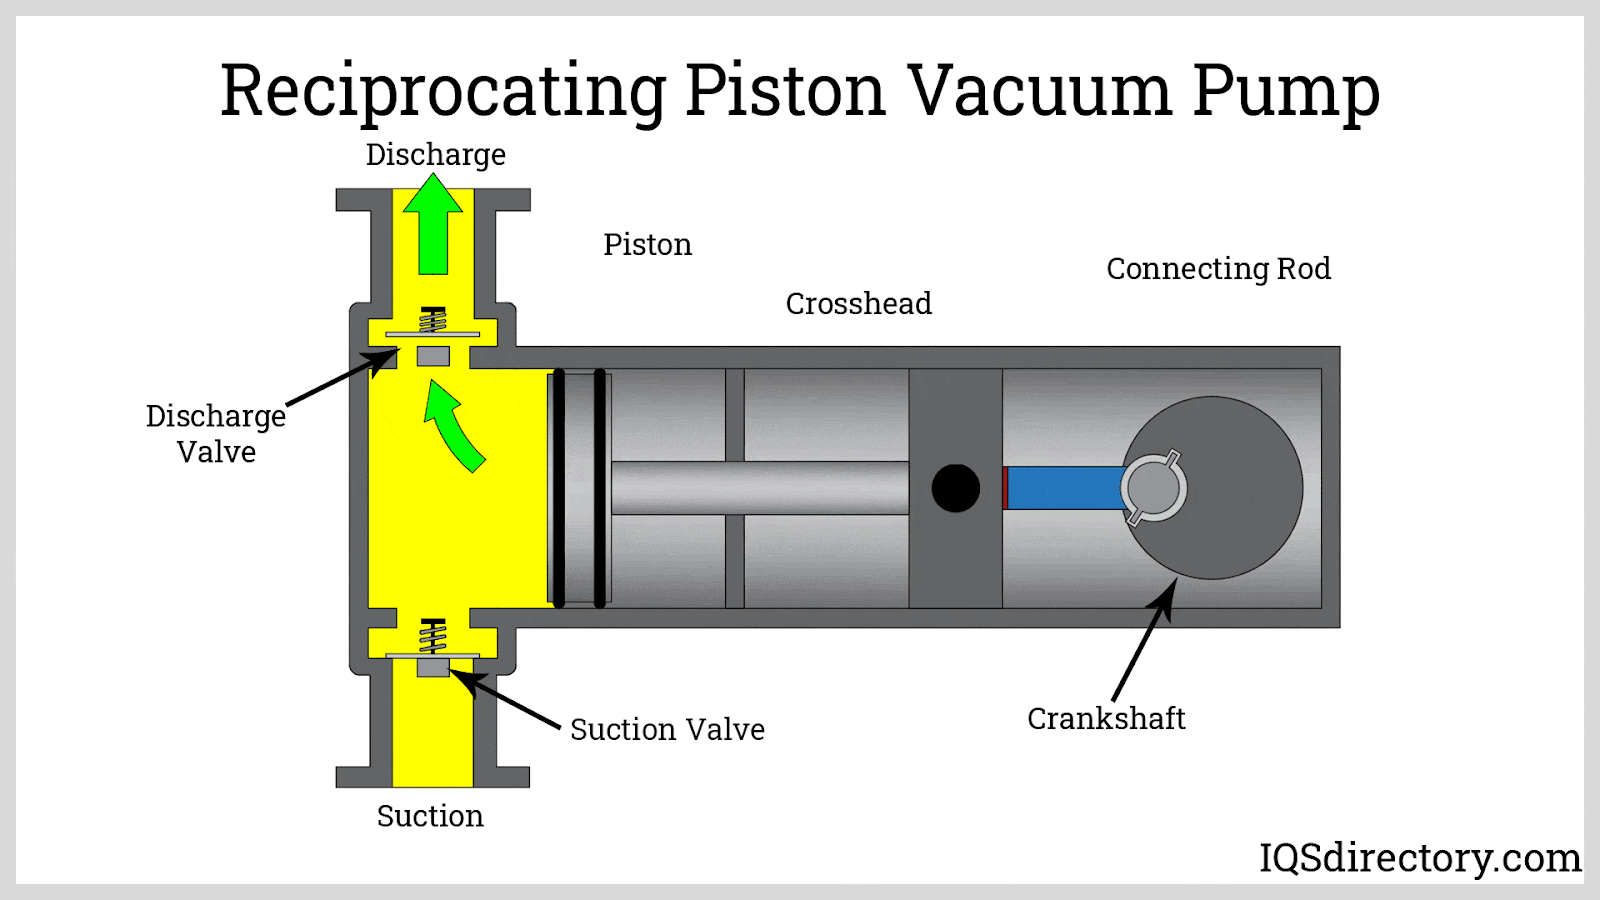 Reciprocating Piston Vacuum Pump